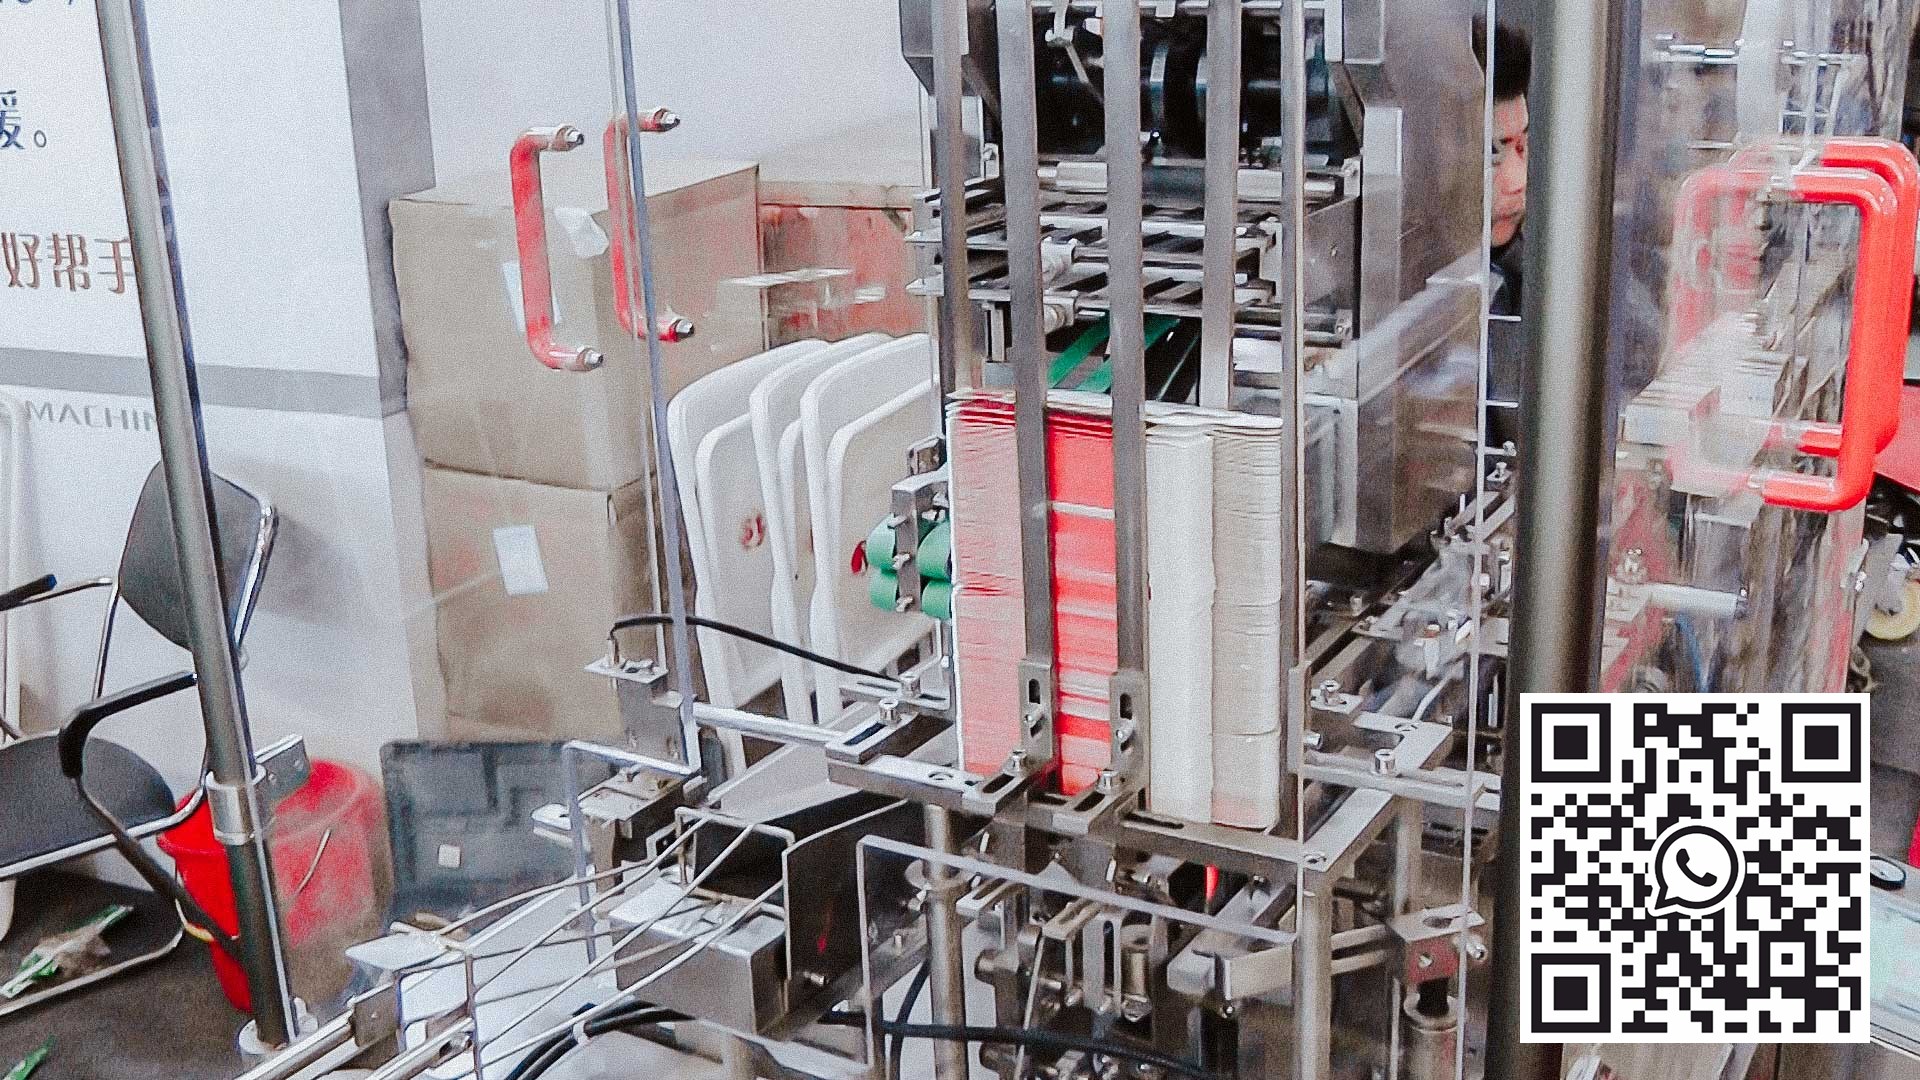 Automatický kartonovací stroj na balení blistrů s tabletami v krabičkách